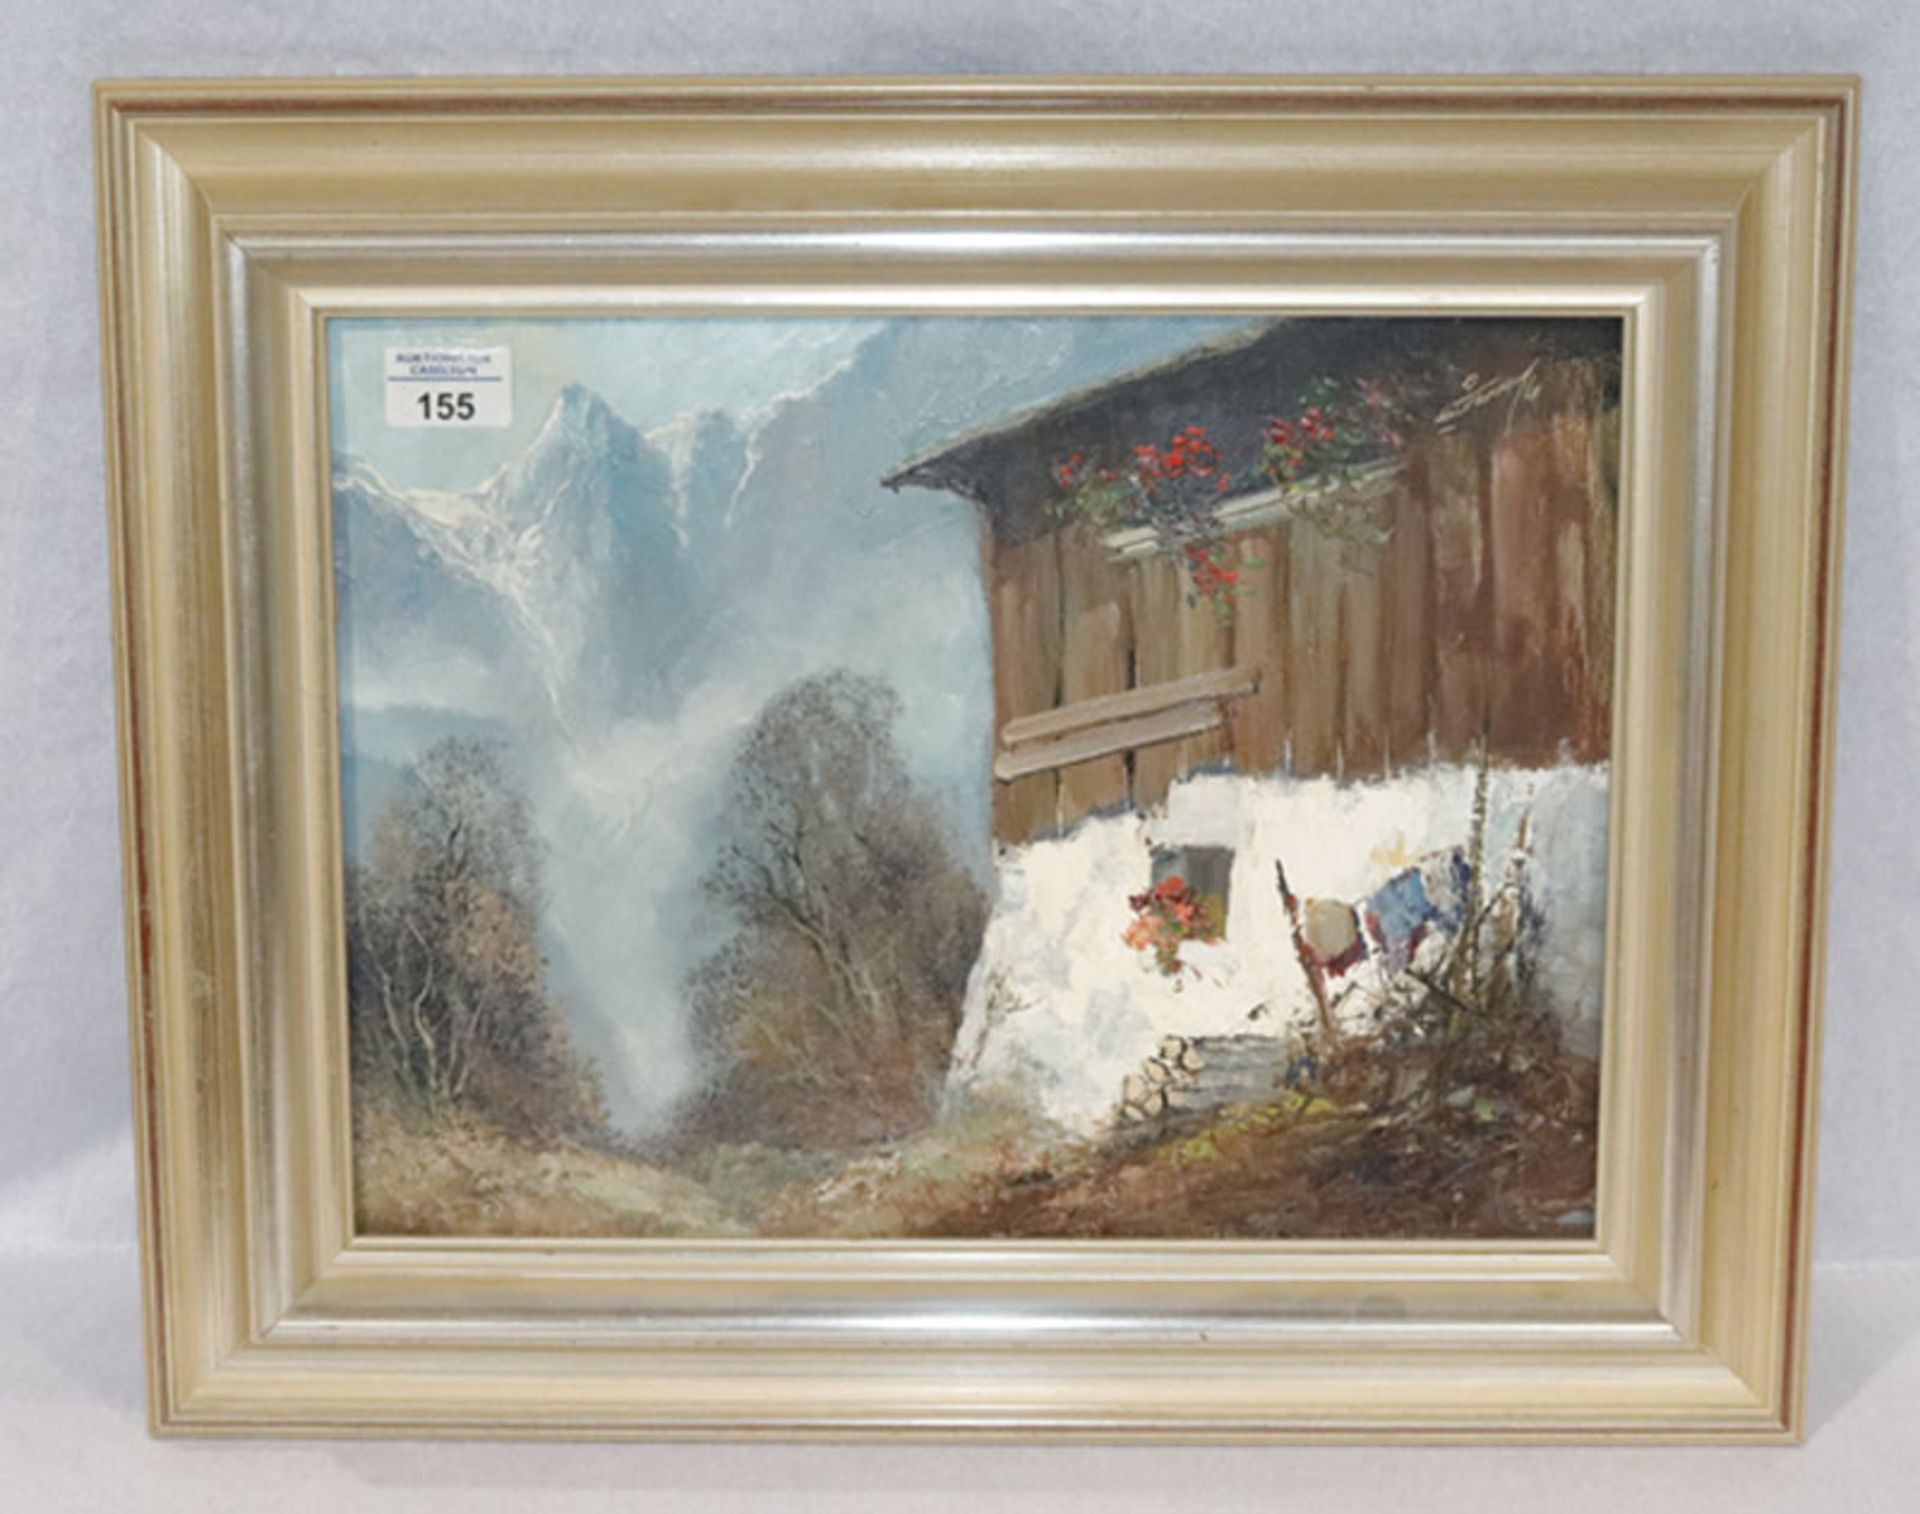 Gemälde ÖL/Maklkarton 'Bauernhaus im Hochgebirge', signiert Gustav Türk, * 1923 Sessen/Harz + 1978